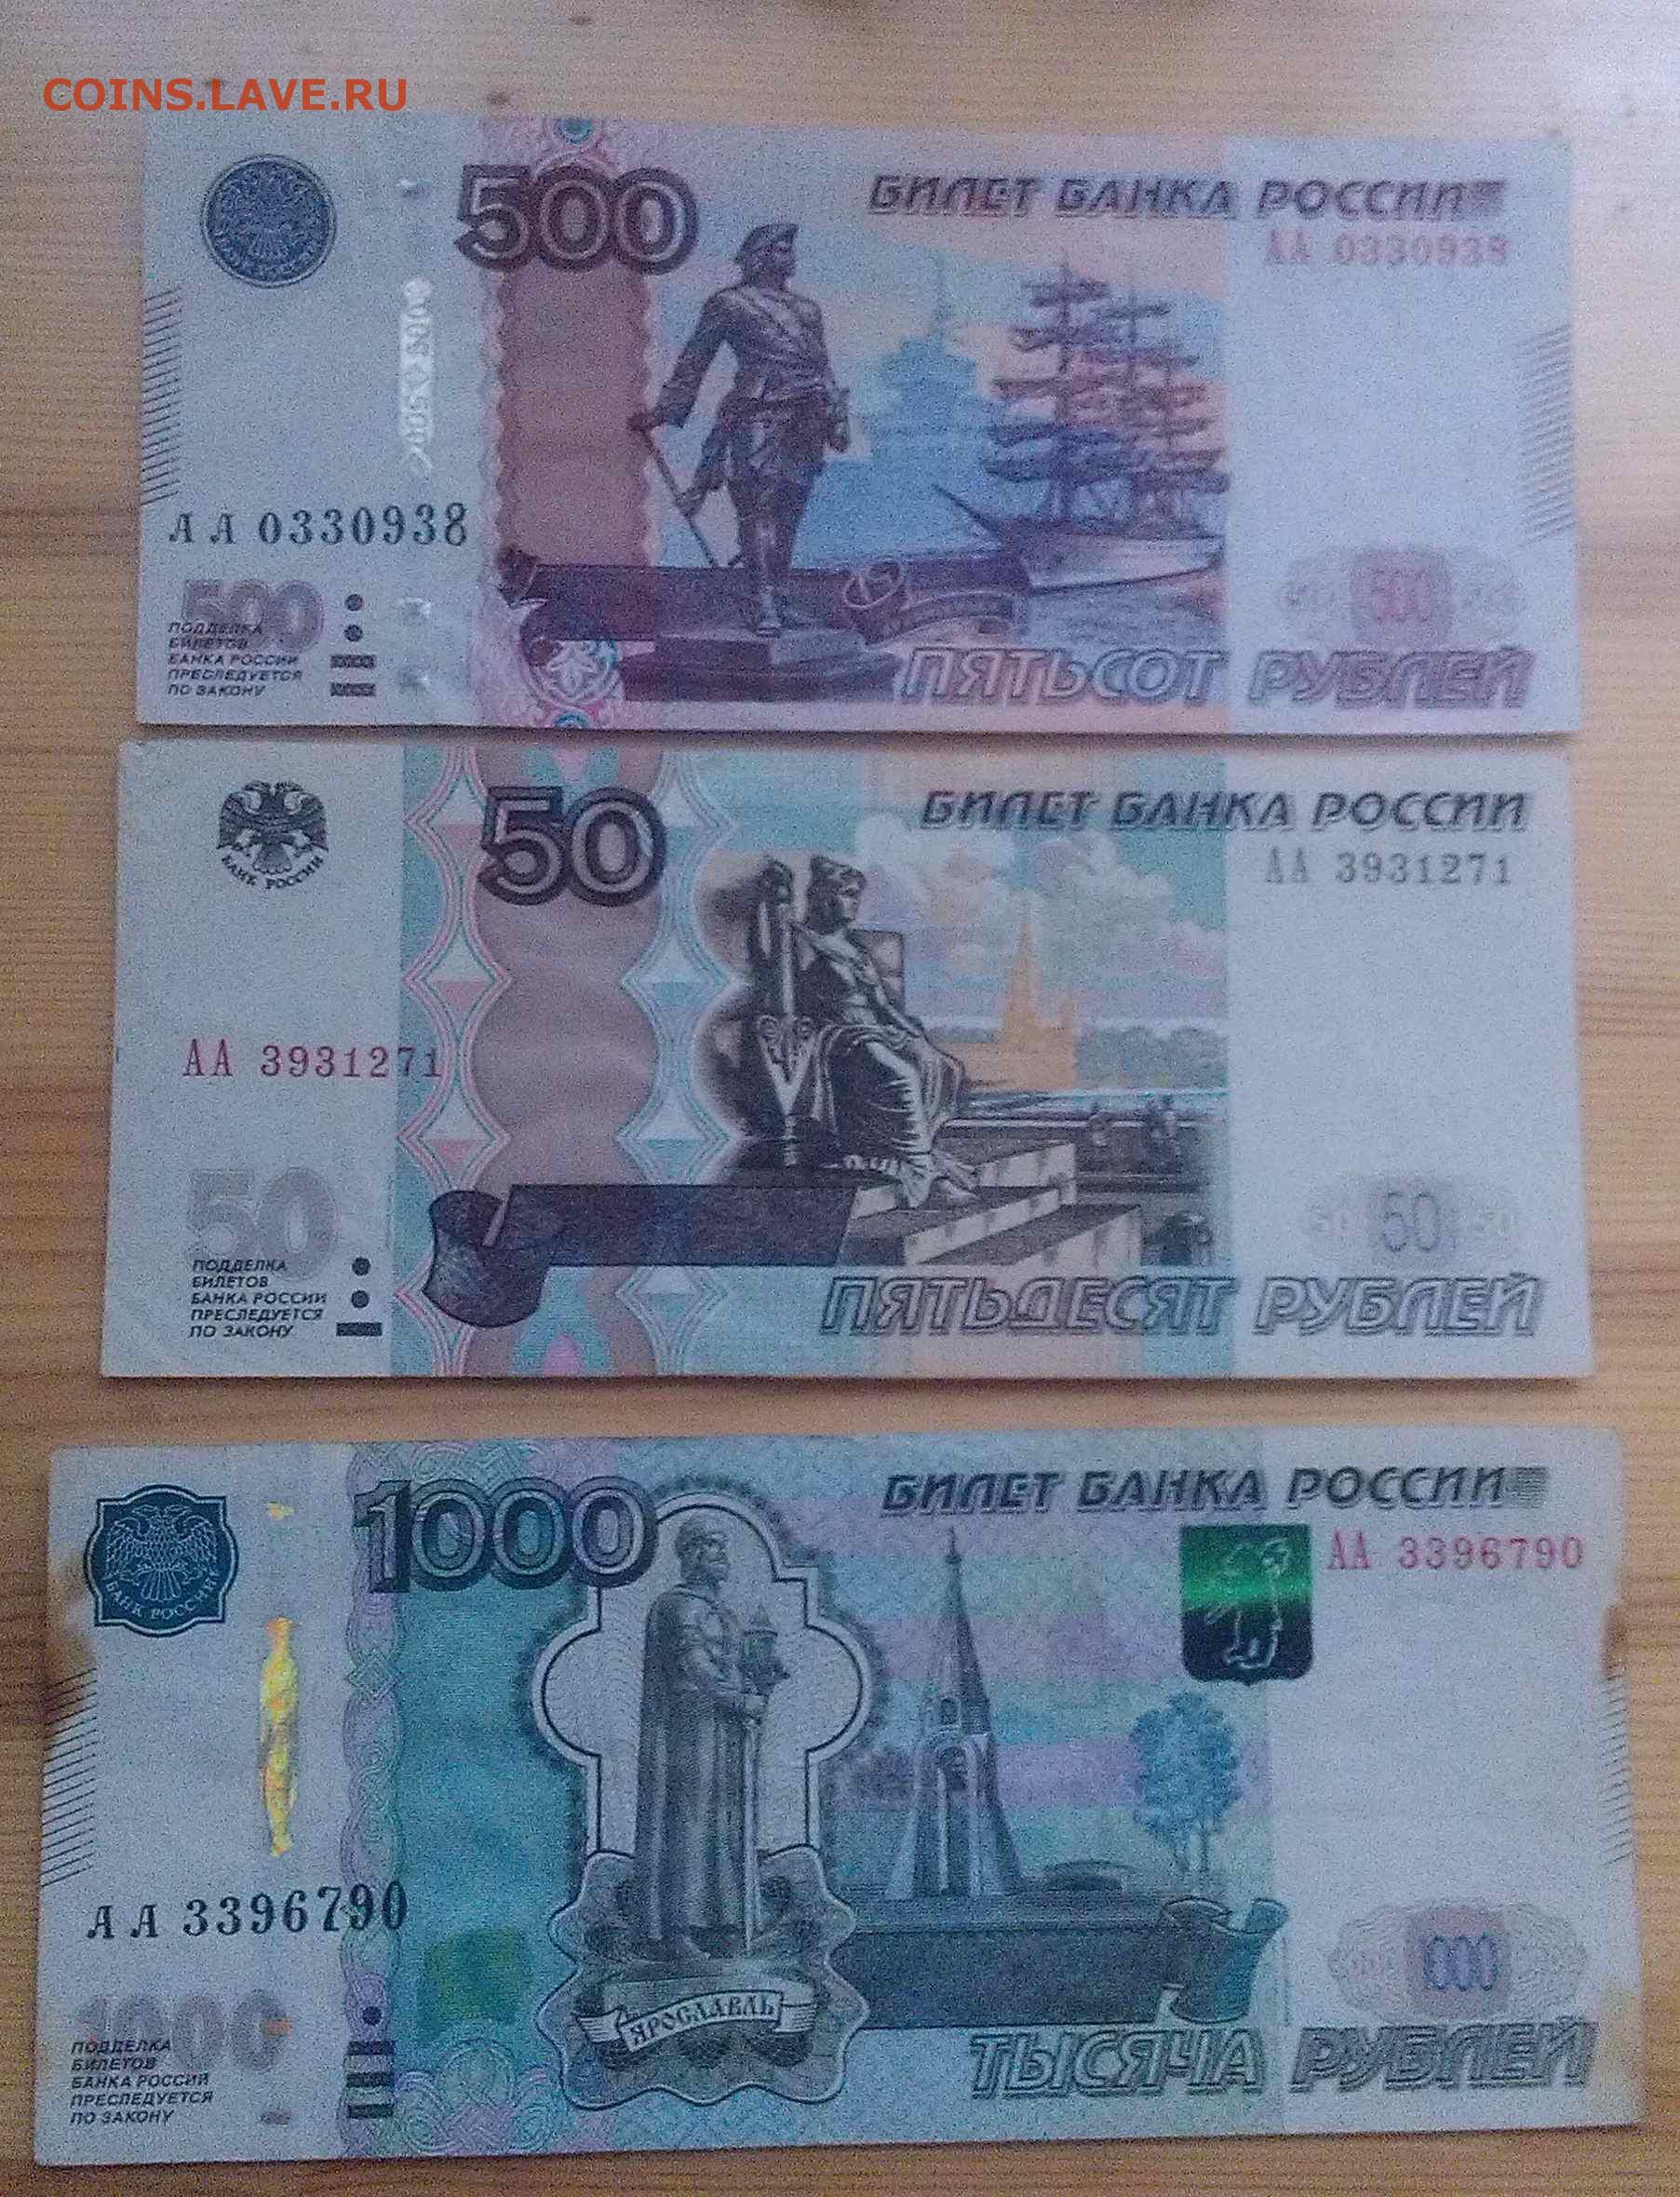 1000 рублей 2004. 500 Рублей 2010. 1000 Рублей 2010. 500 Рублей 2004 и 2010.